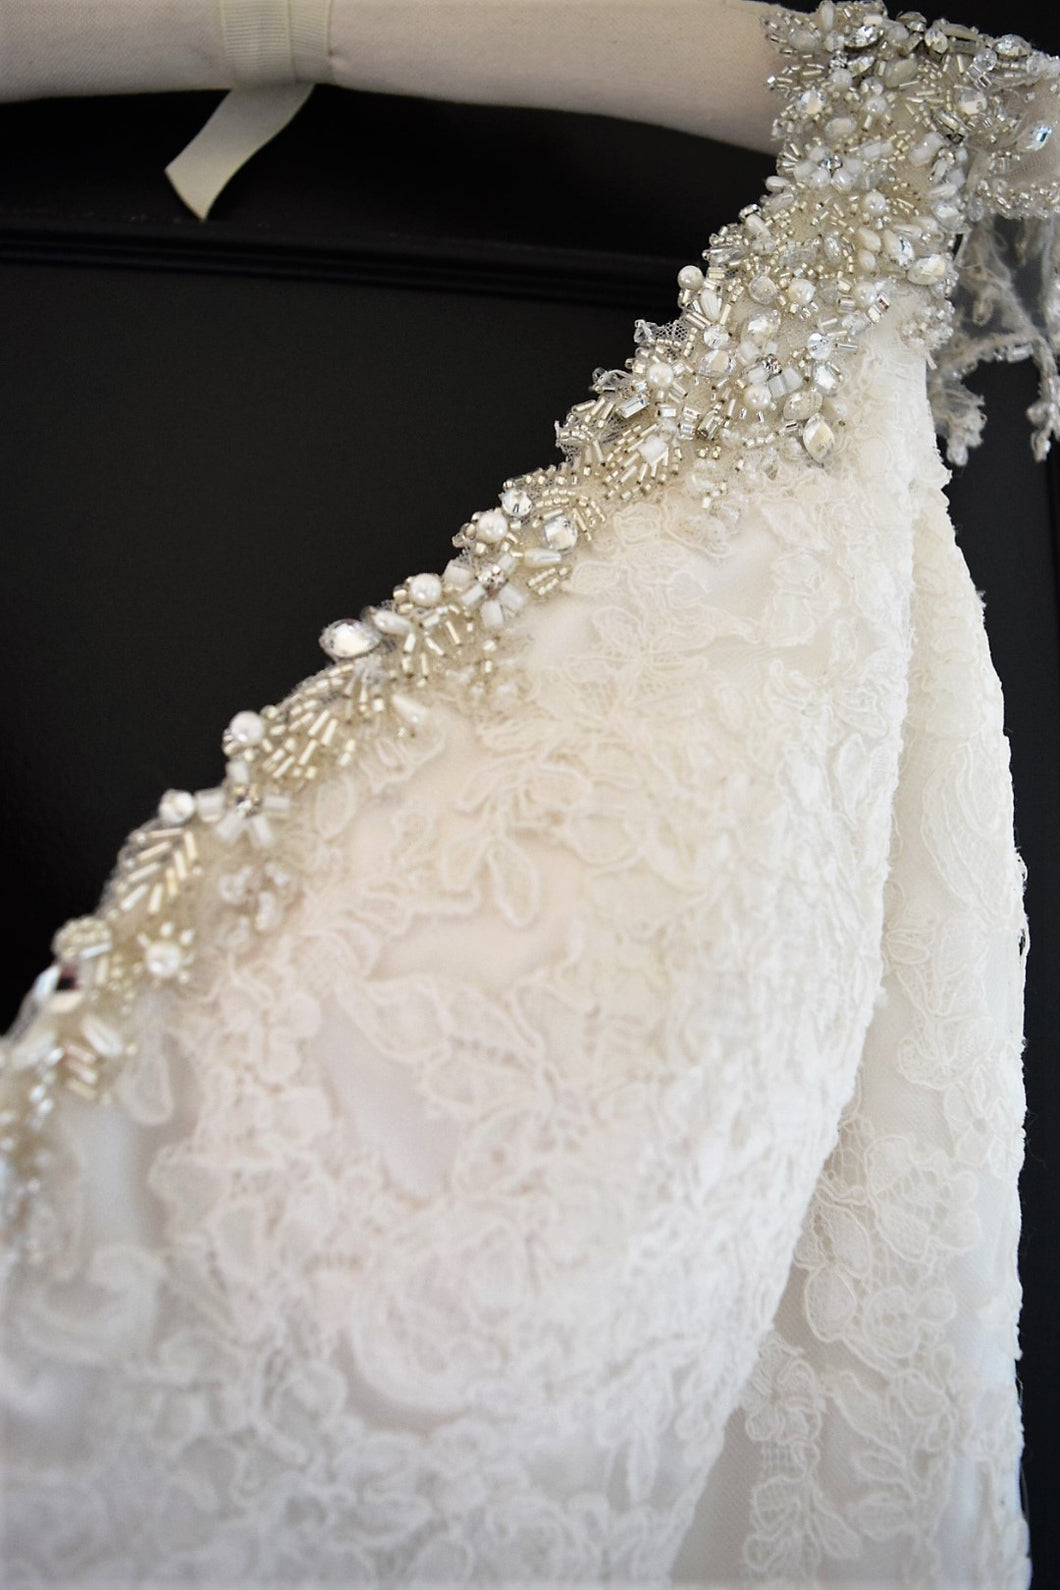 Maggie Sottero 'Cynthia' size 14 new wedding dress view of beadwork